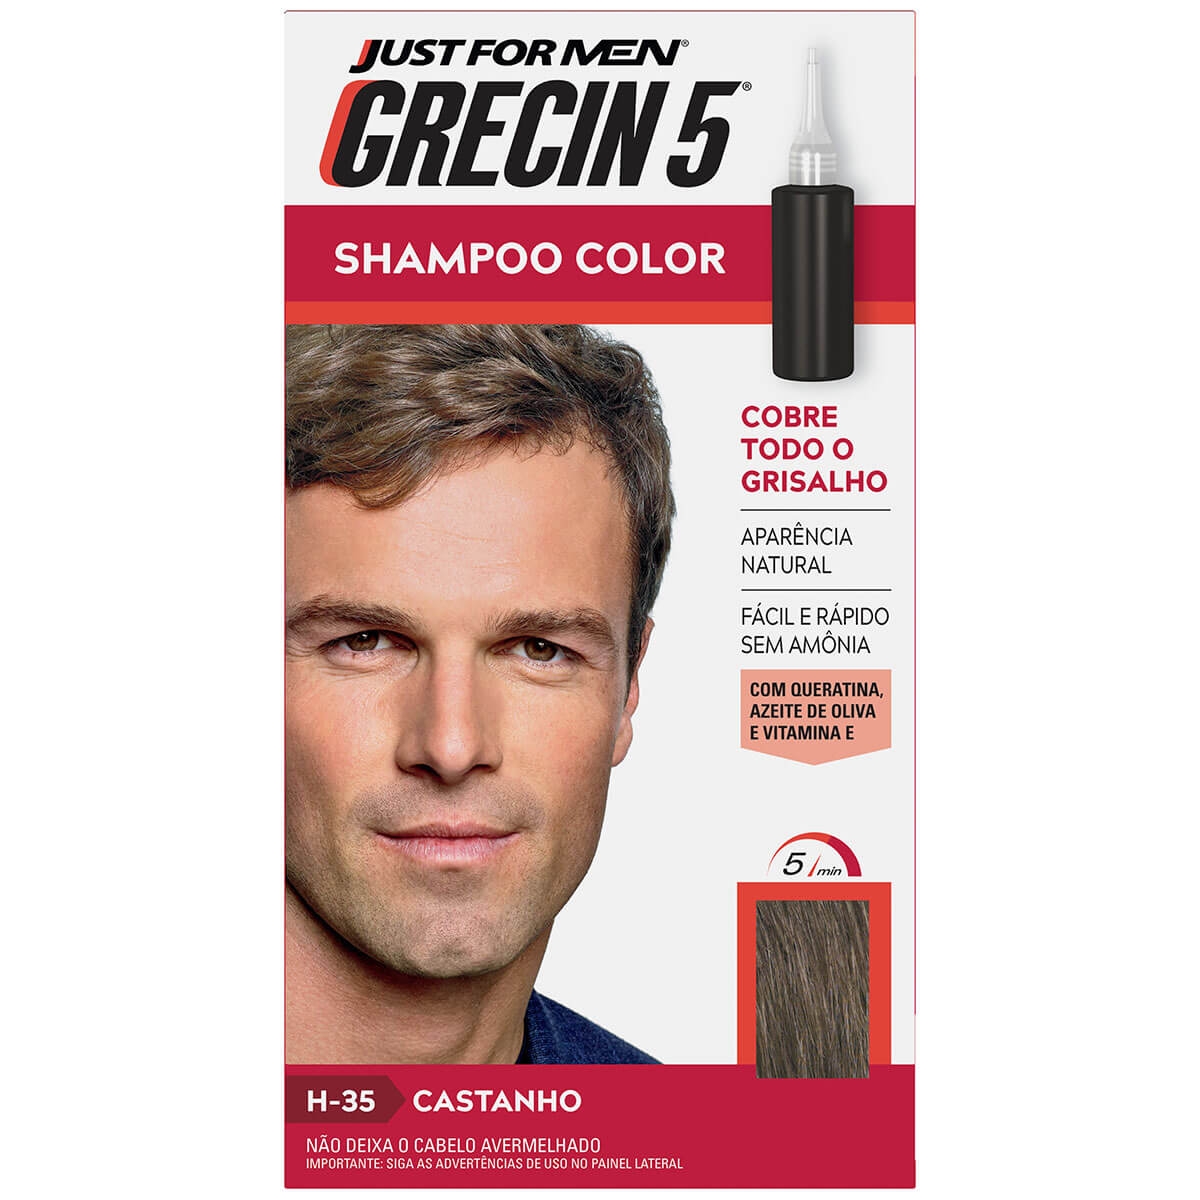 Shampoo Color Grecin 5 Just For Men H-35 Castanho com 60ml